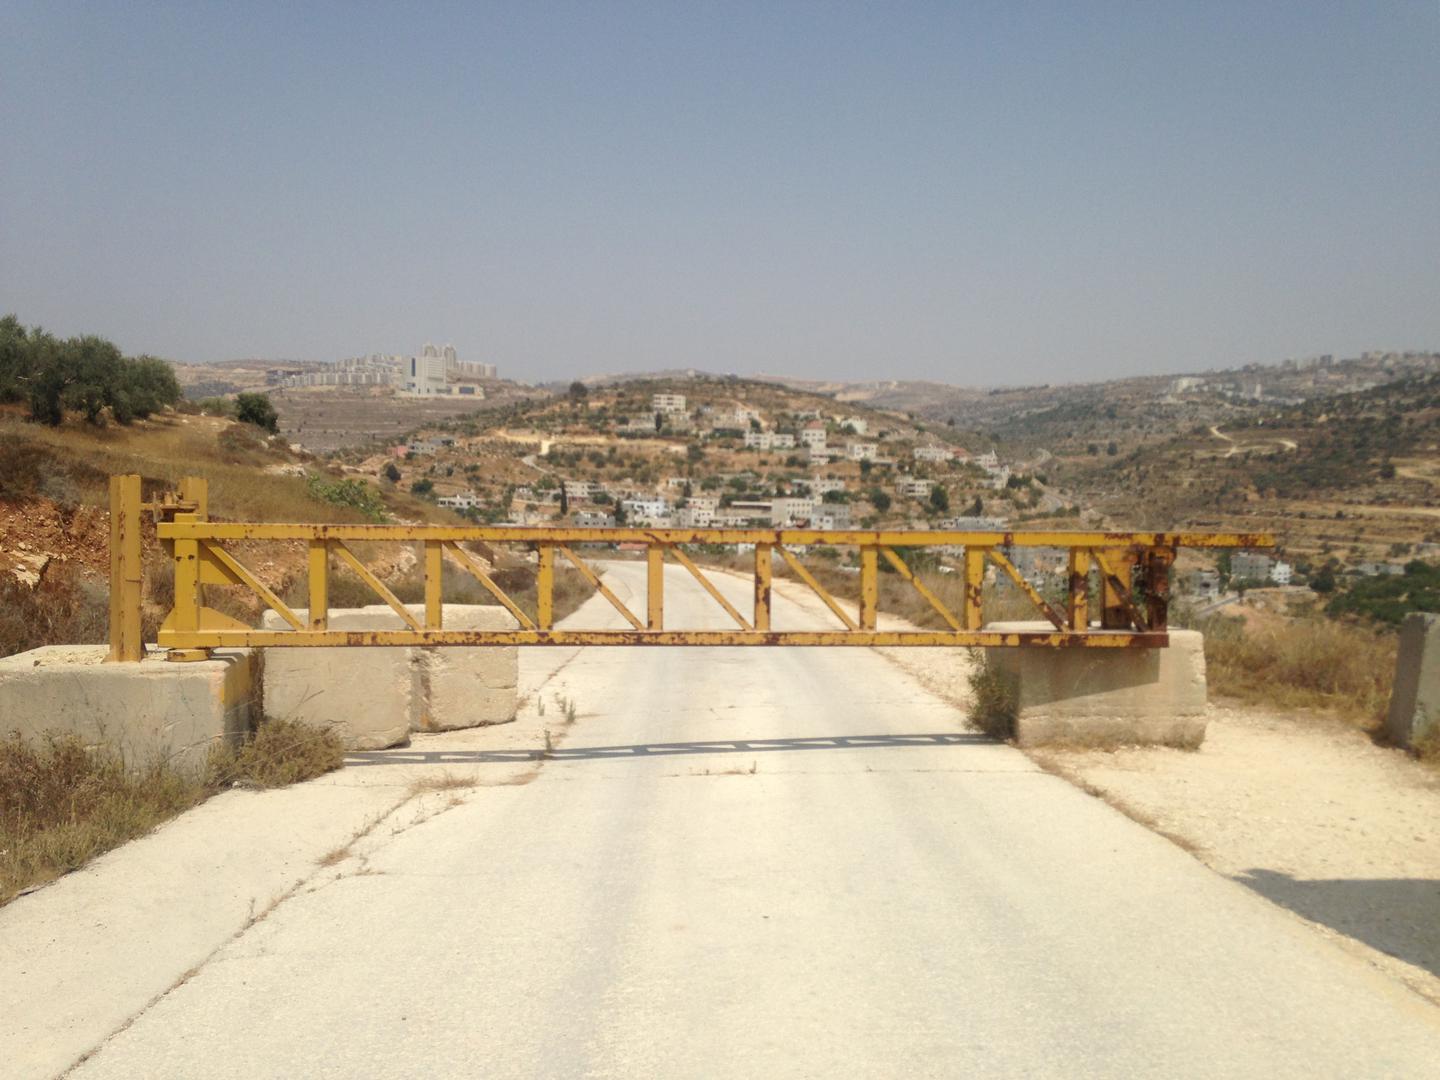 שער המוצב על כביש ליד ההתנחלות דולב וחוסם את דרכם של כלי-רכב פלסטיניים מהכפר הסמוך עין קינייא לכביש הראשי. © Human Rights Watch 2017